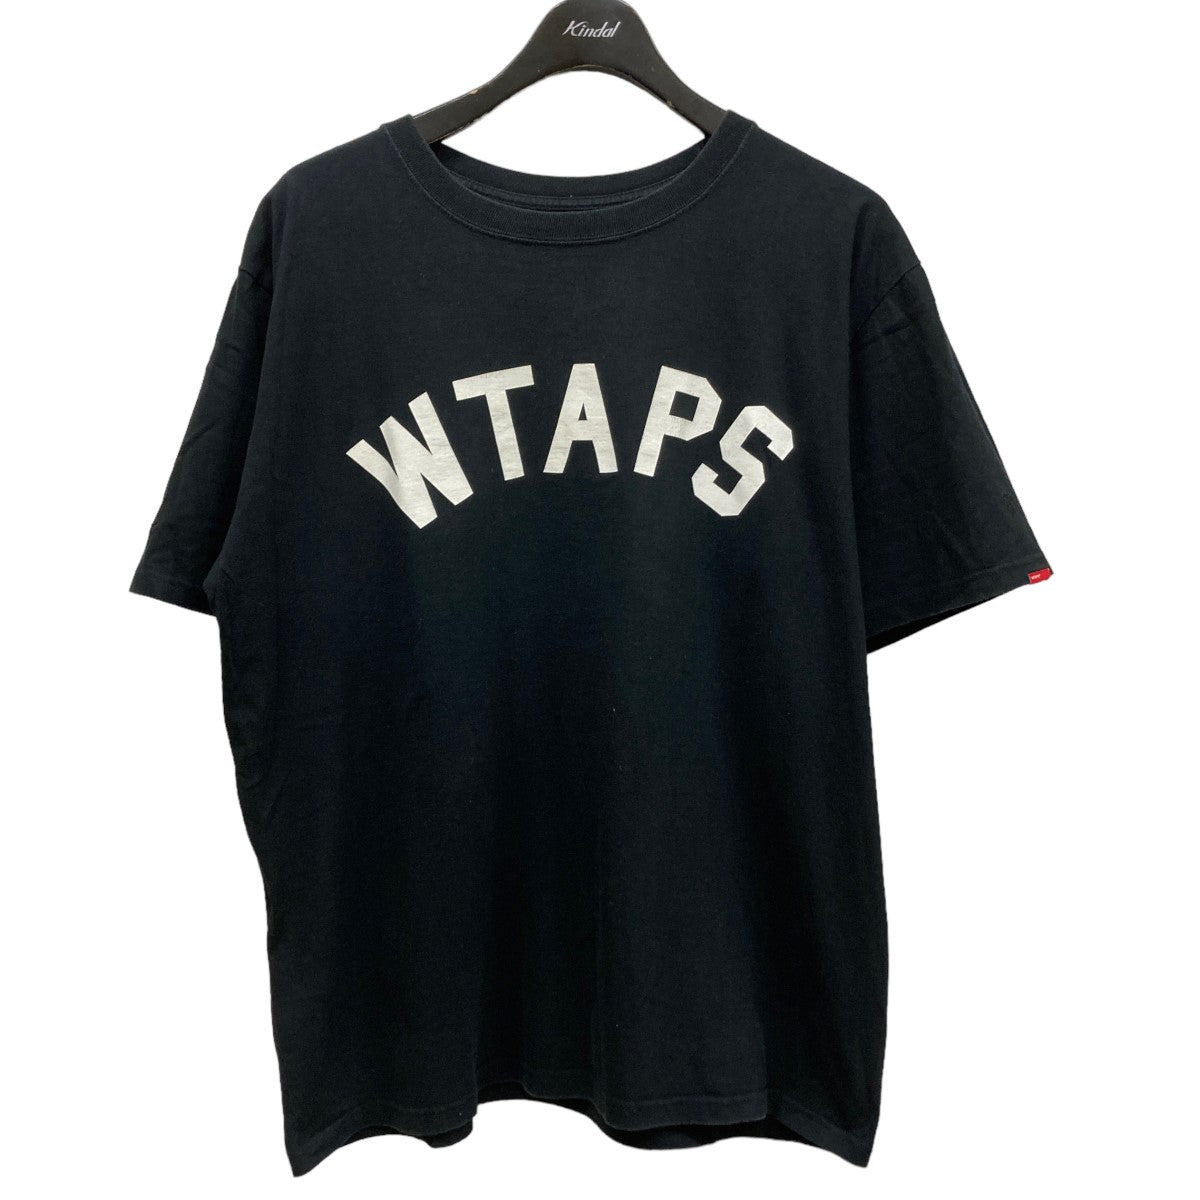 WTAPS(ダブルタップス) ロゴプリントTシャツ ブラック サイズ L 